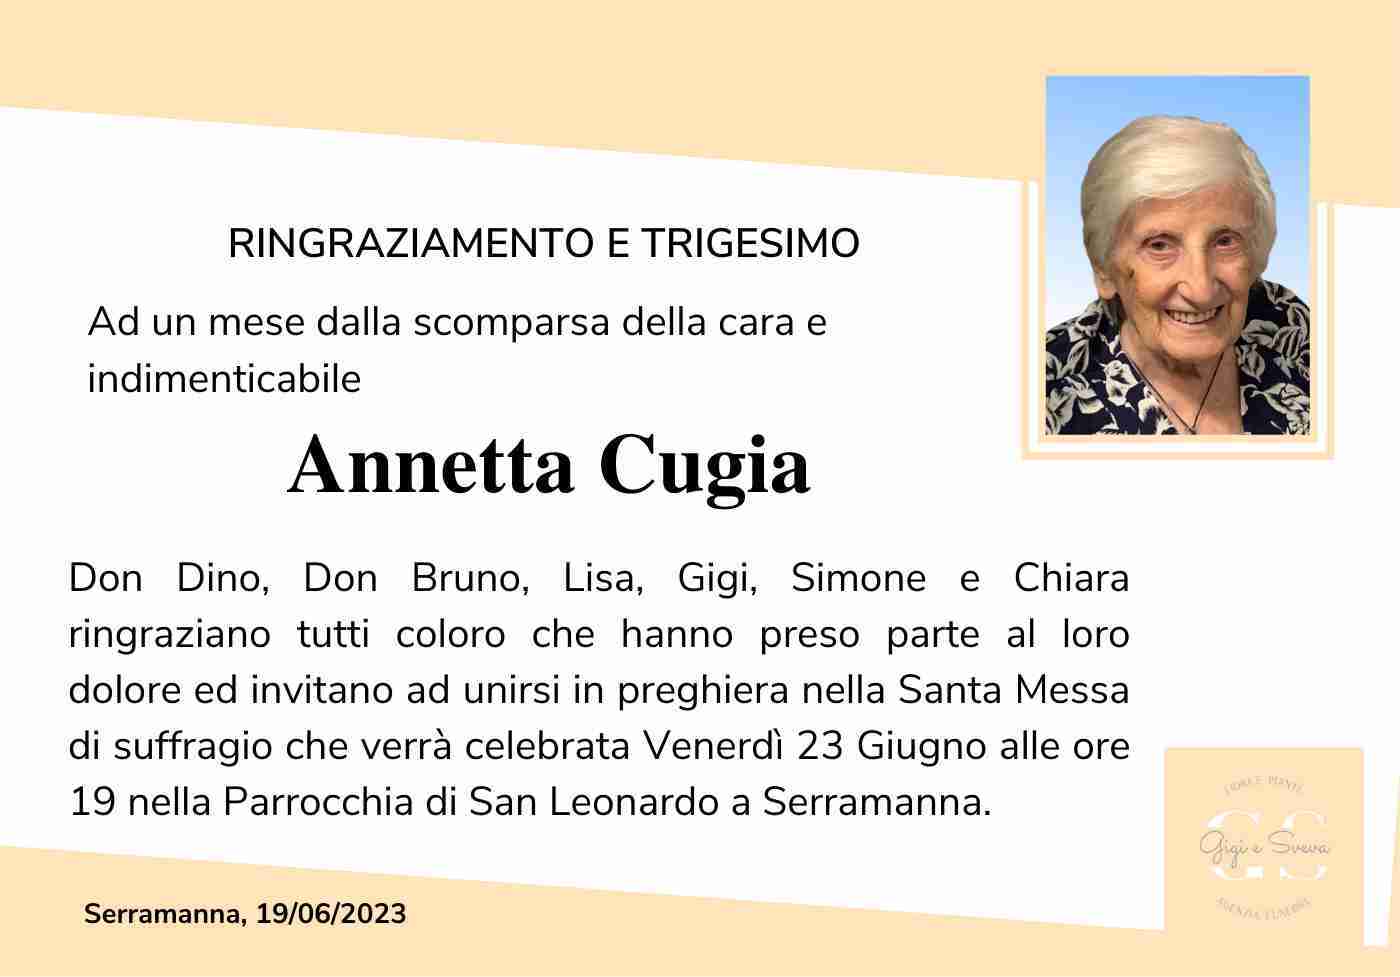 Annetta Cugia